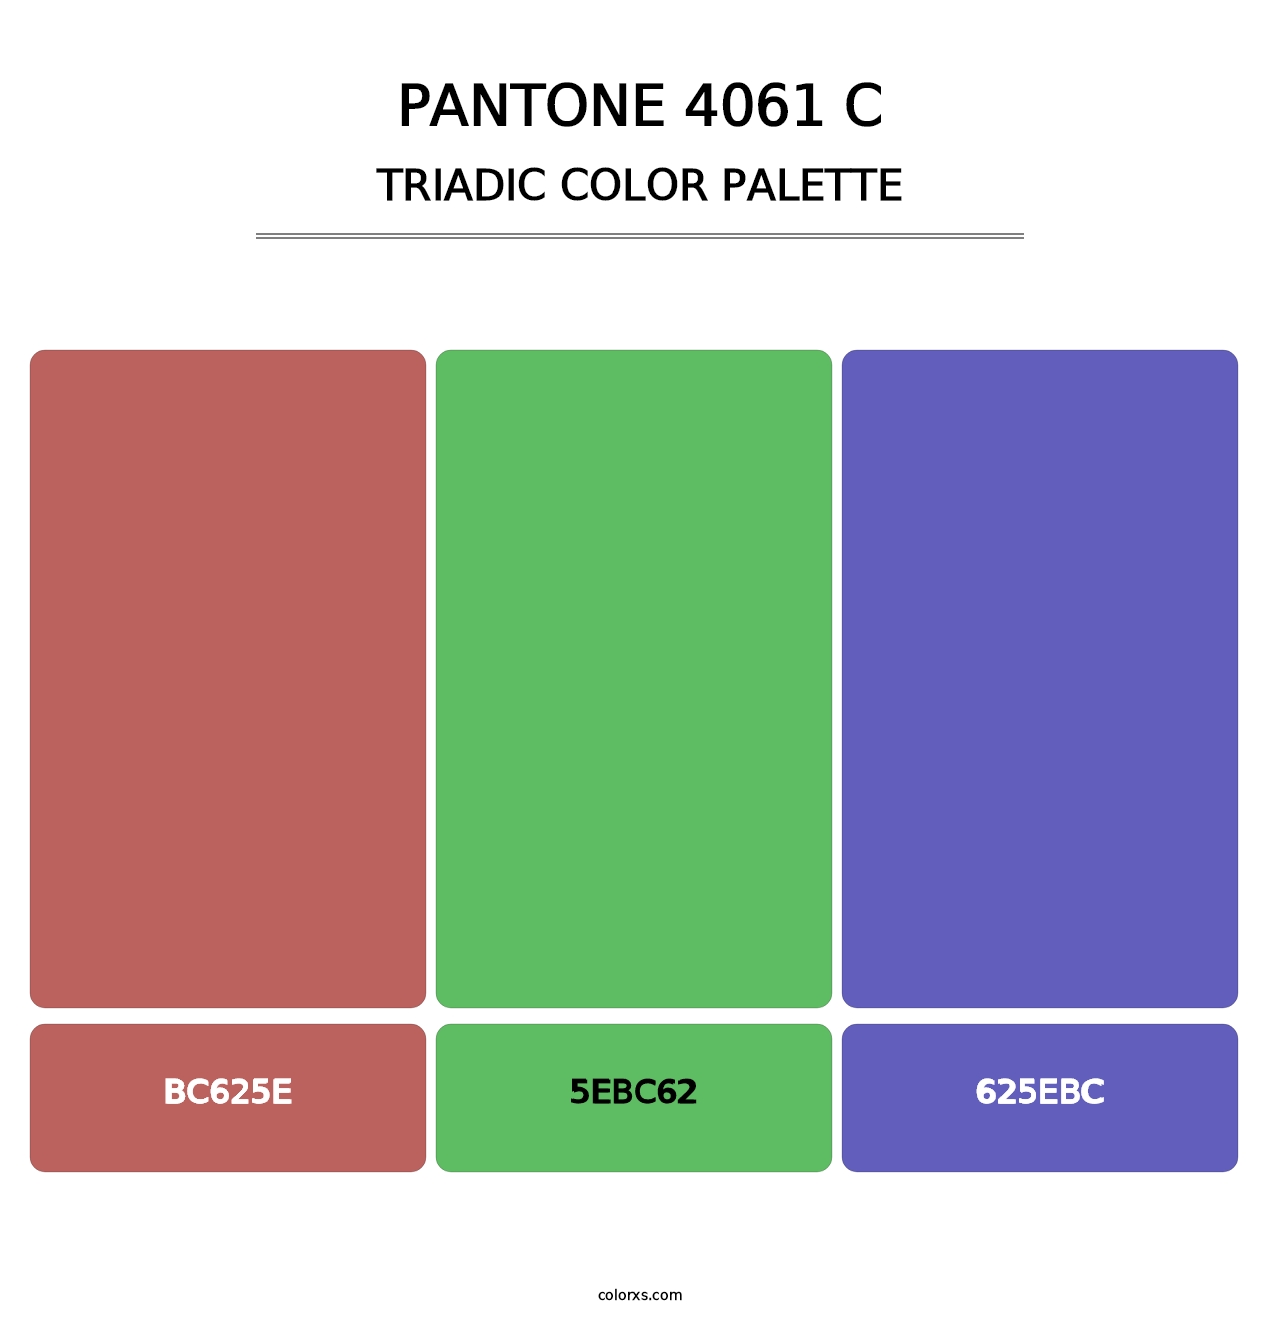 PANTONE 4061 C - Triadic Color Palette